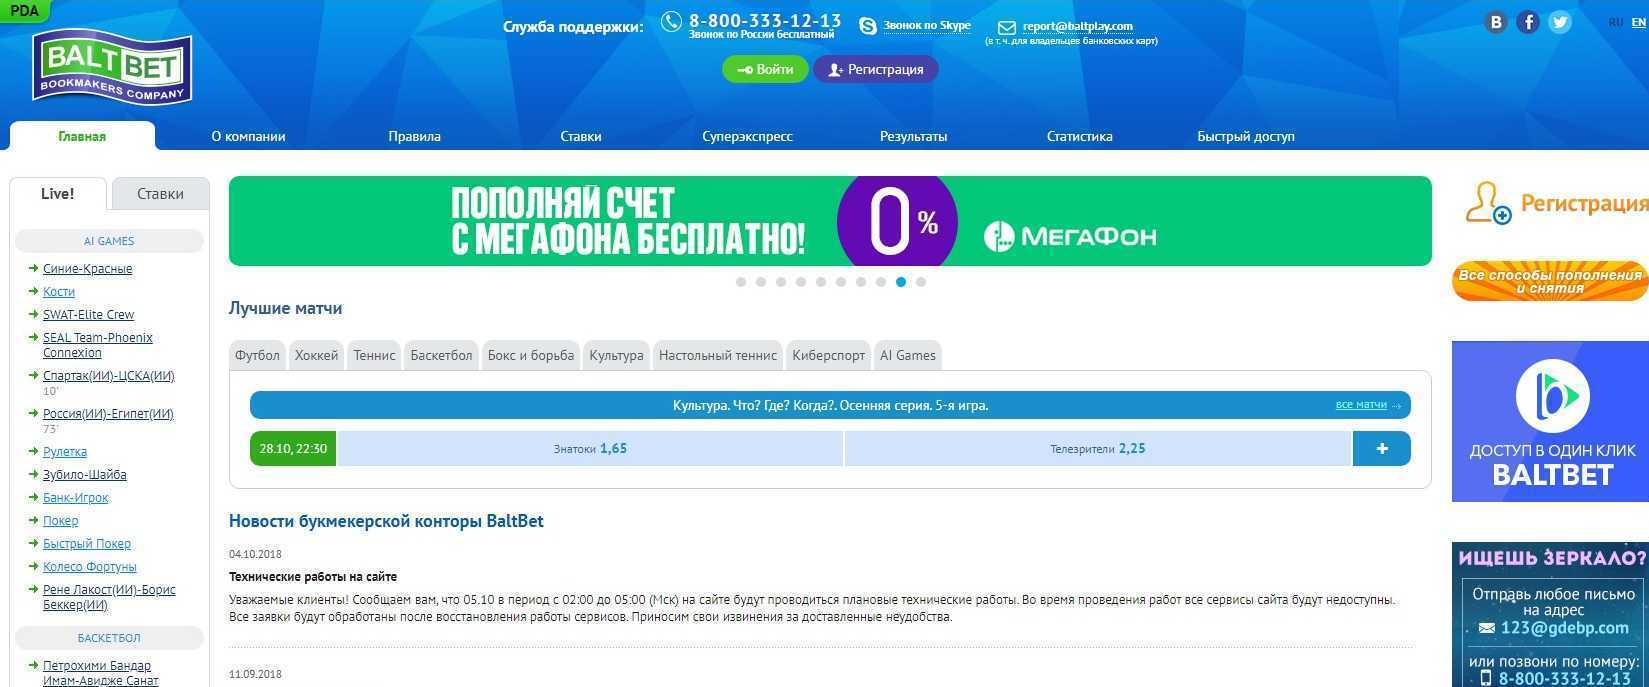 Спортпрогноз букмекерская контора казань сайт маг на полную ставку читать онлайн на русском